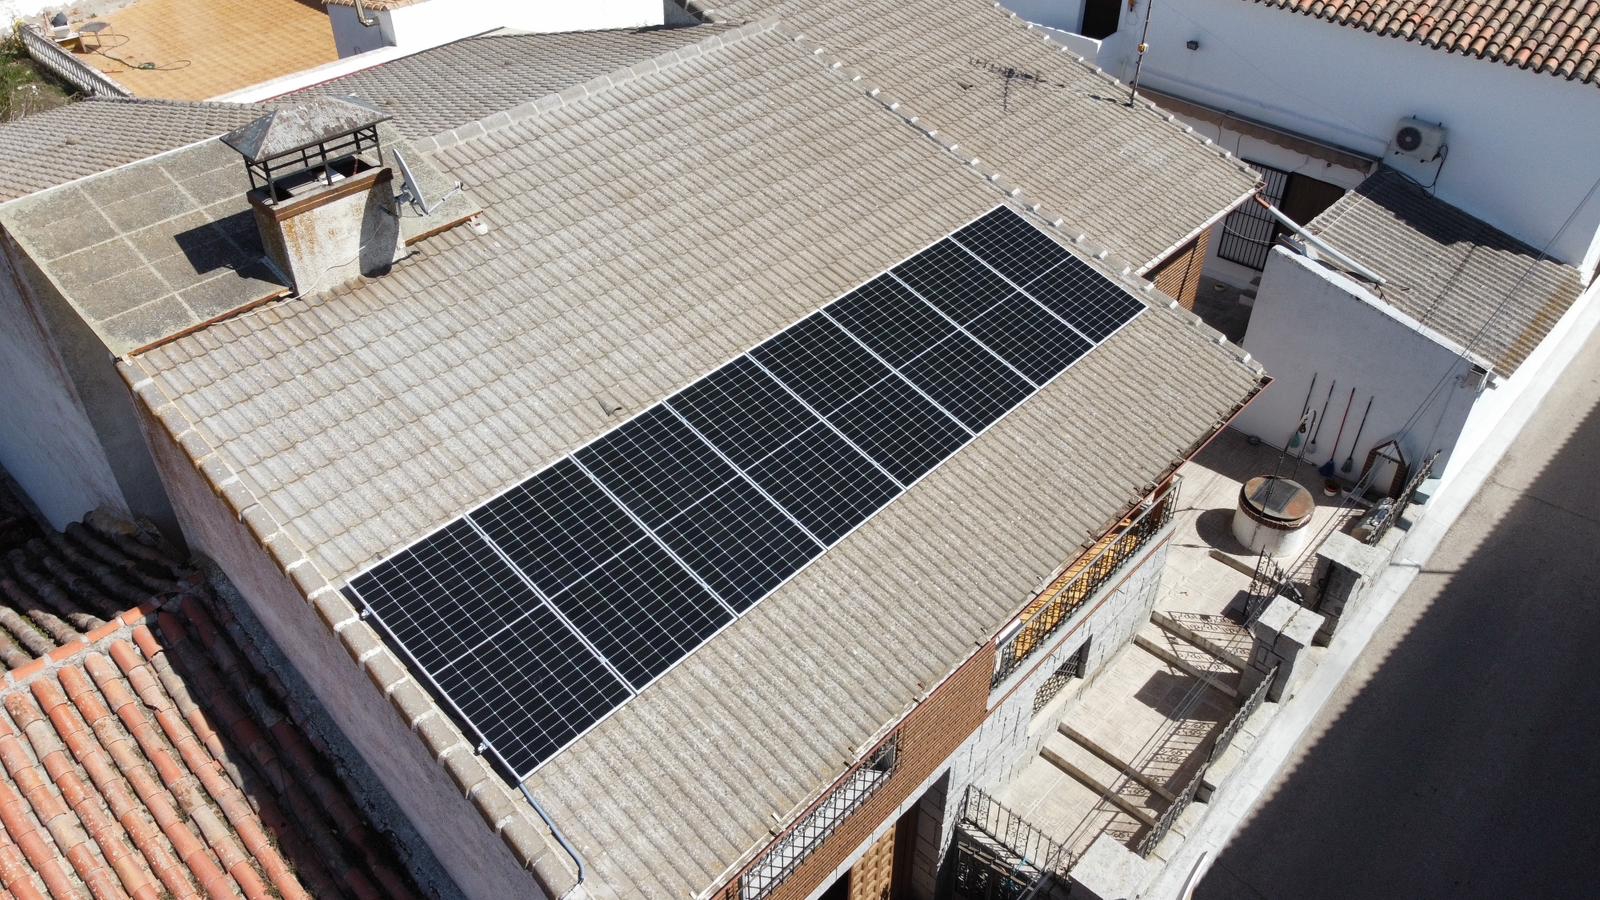 Images Colado Renovables Instalación de Paneles Solares